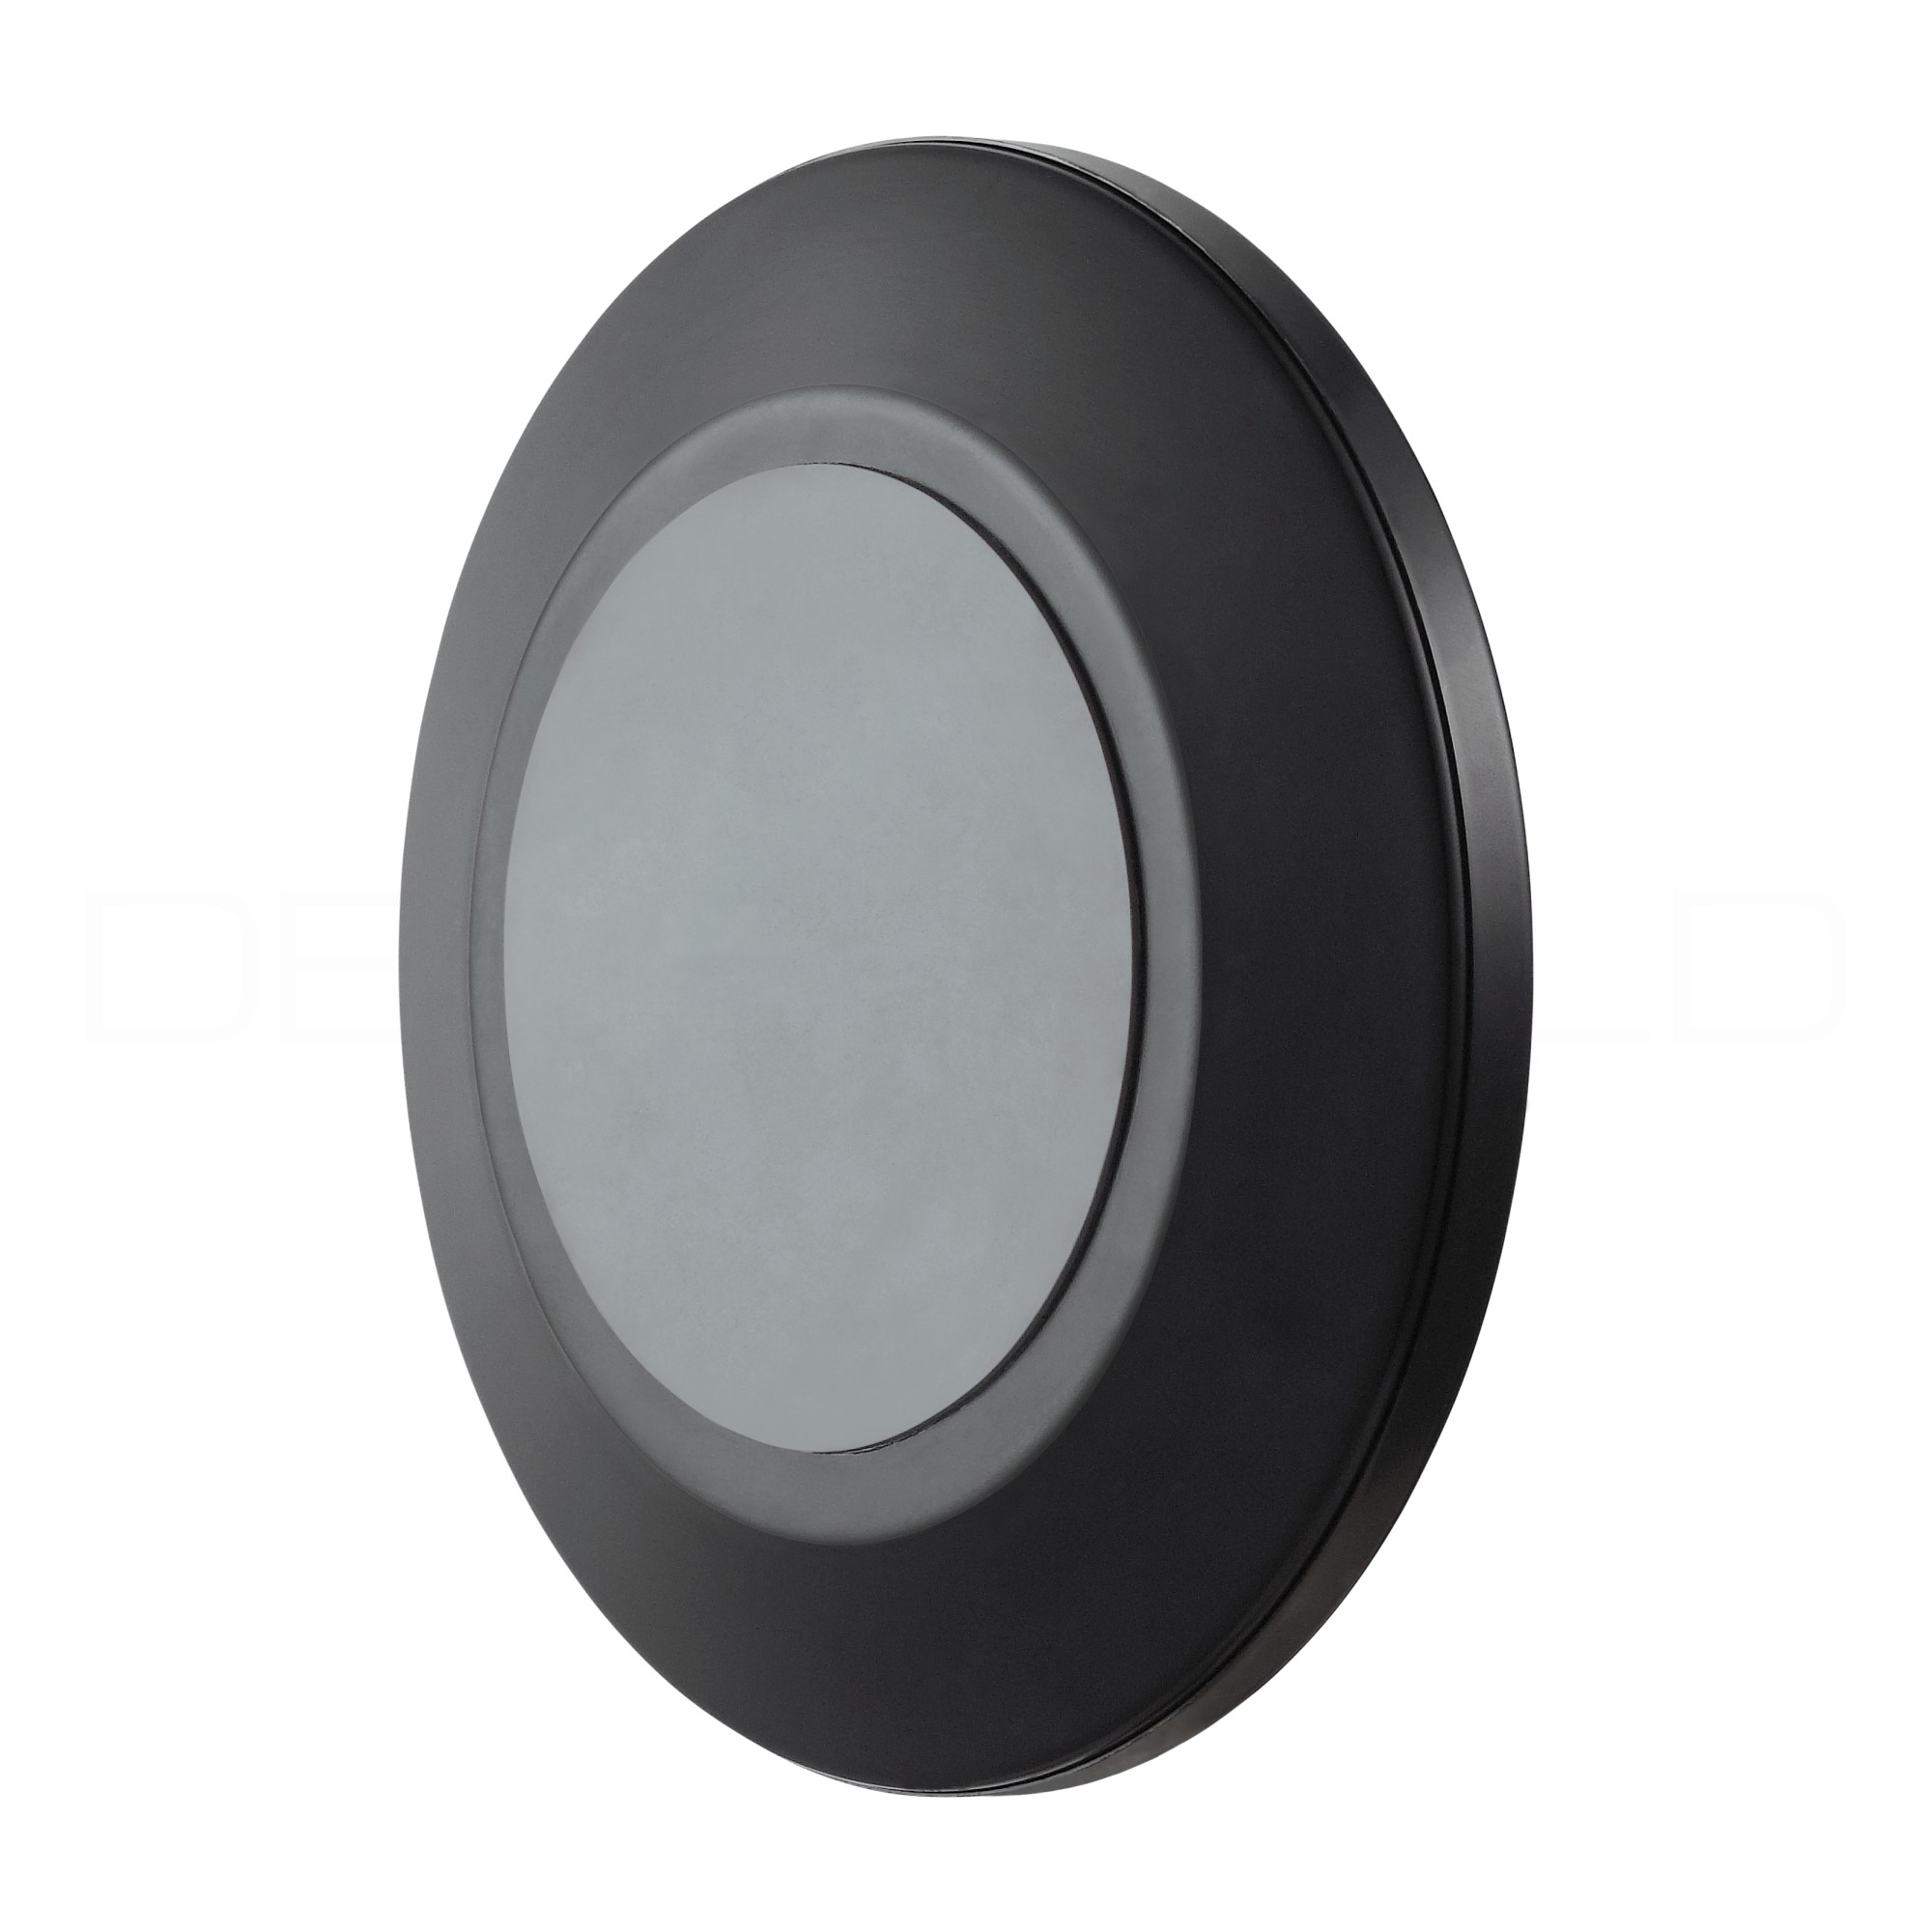 Kosmetikspiegel online kaufen  MAEDJE KG - DEUSENFELD KM7B - Magnet  Kosmetikspiegel mit 2 selbstklebenden Wandplatten, Klebespiegel, magnetisch  abnehmbar, Ø15cm, 7x Vergrößerung, matt schwarz